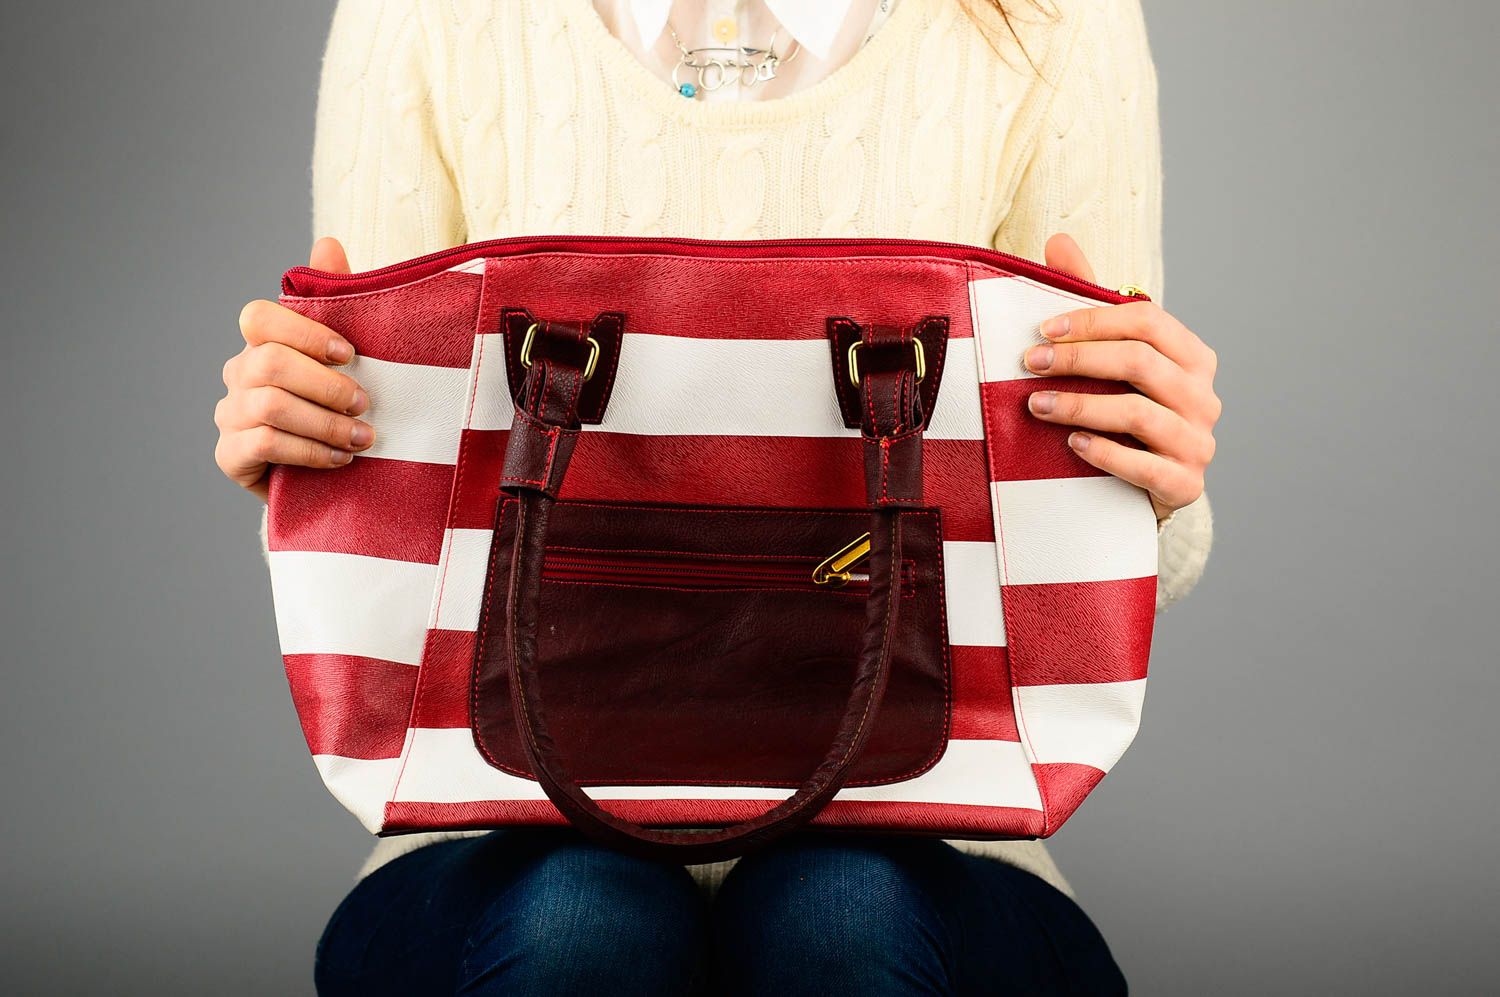 Сумка ручной работы сумка на плечо из кожзама женская сумка красивая стильная фото 2